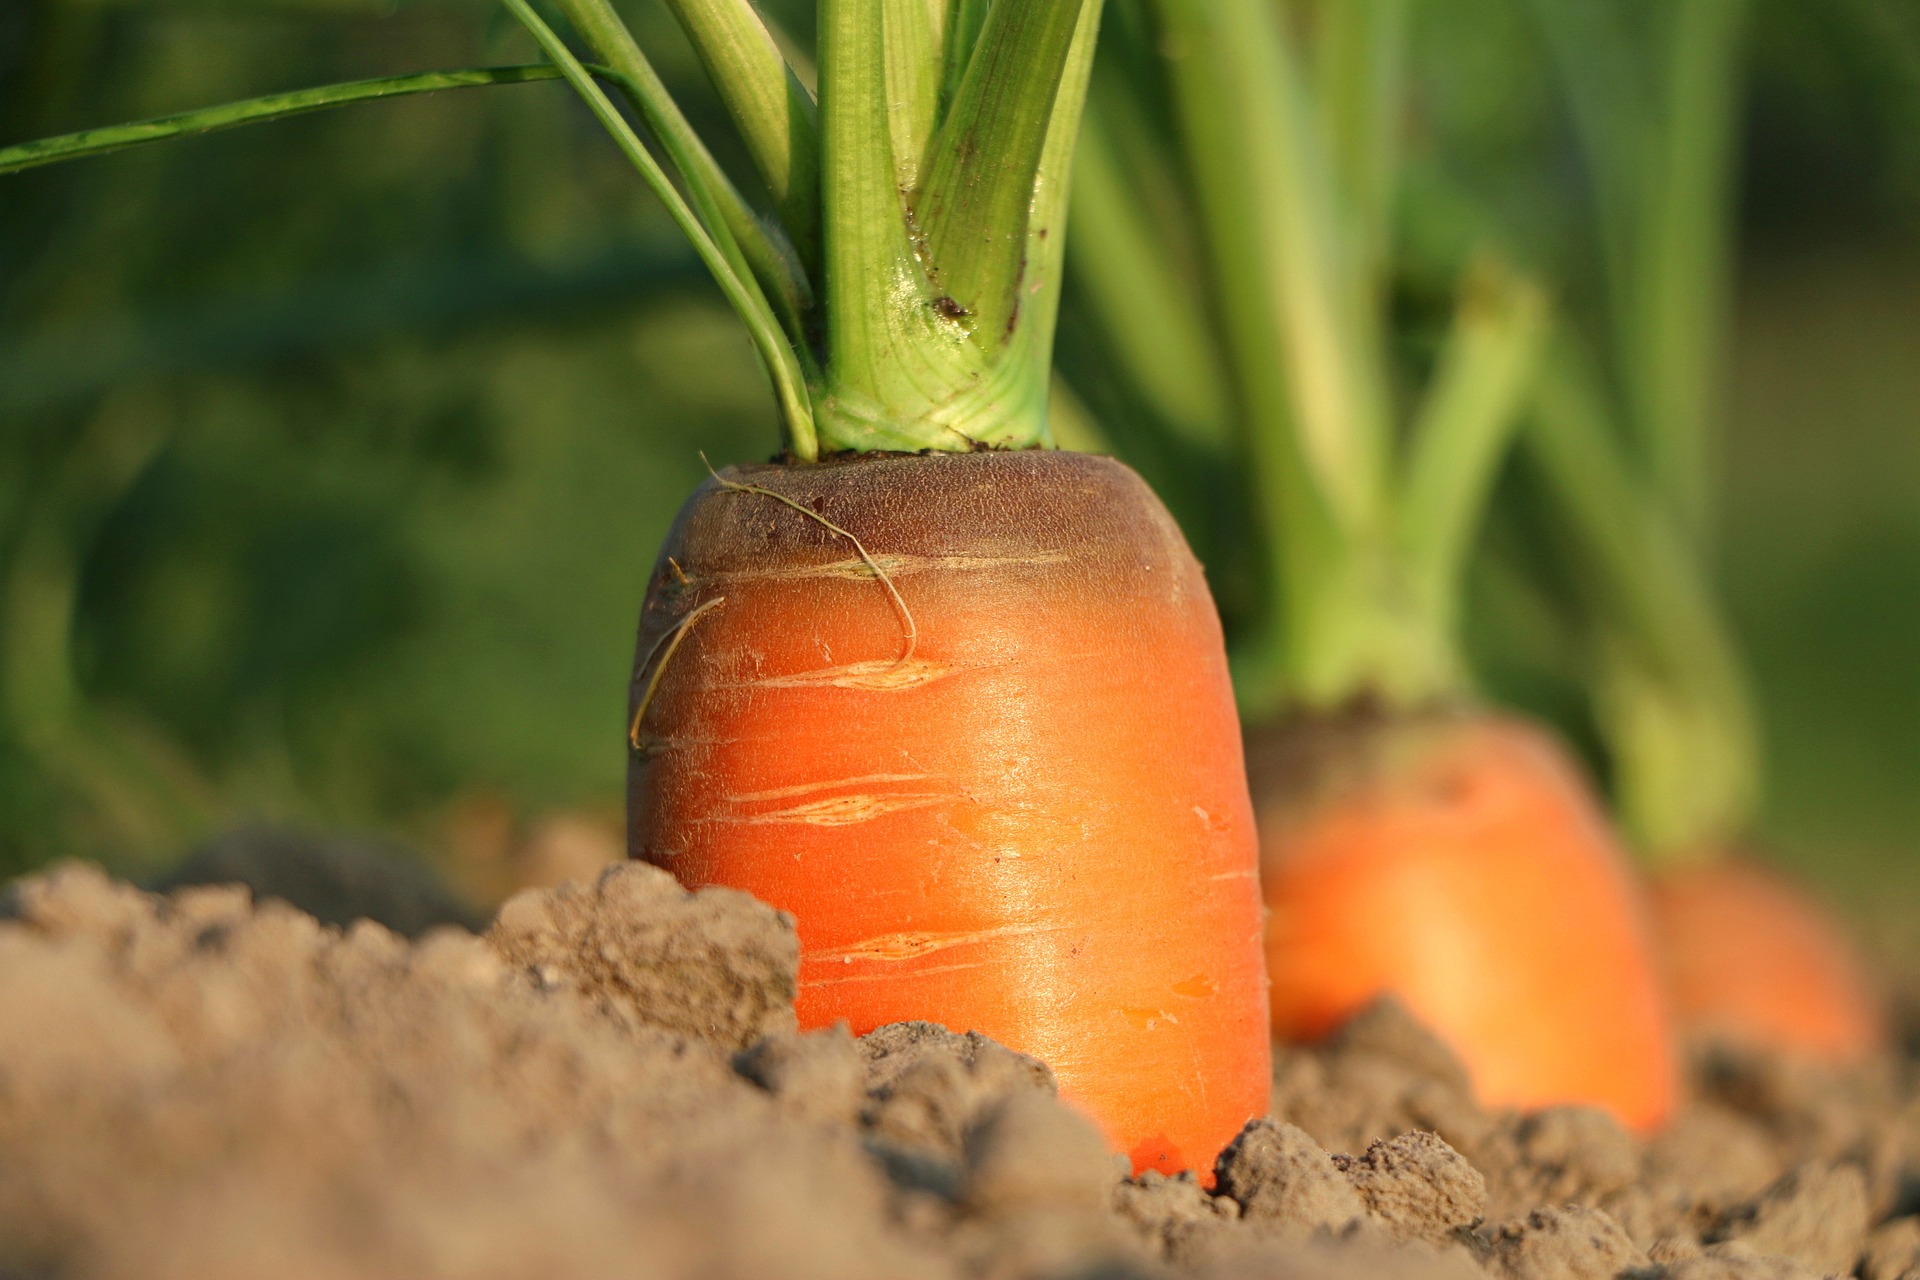 Innowacje w agrotechnologii: rolnictwo precyzyjne i inteligentne systemy uprawy